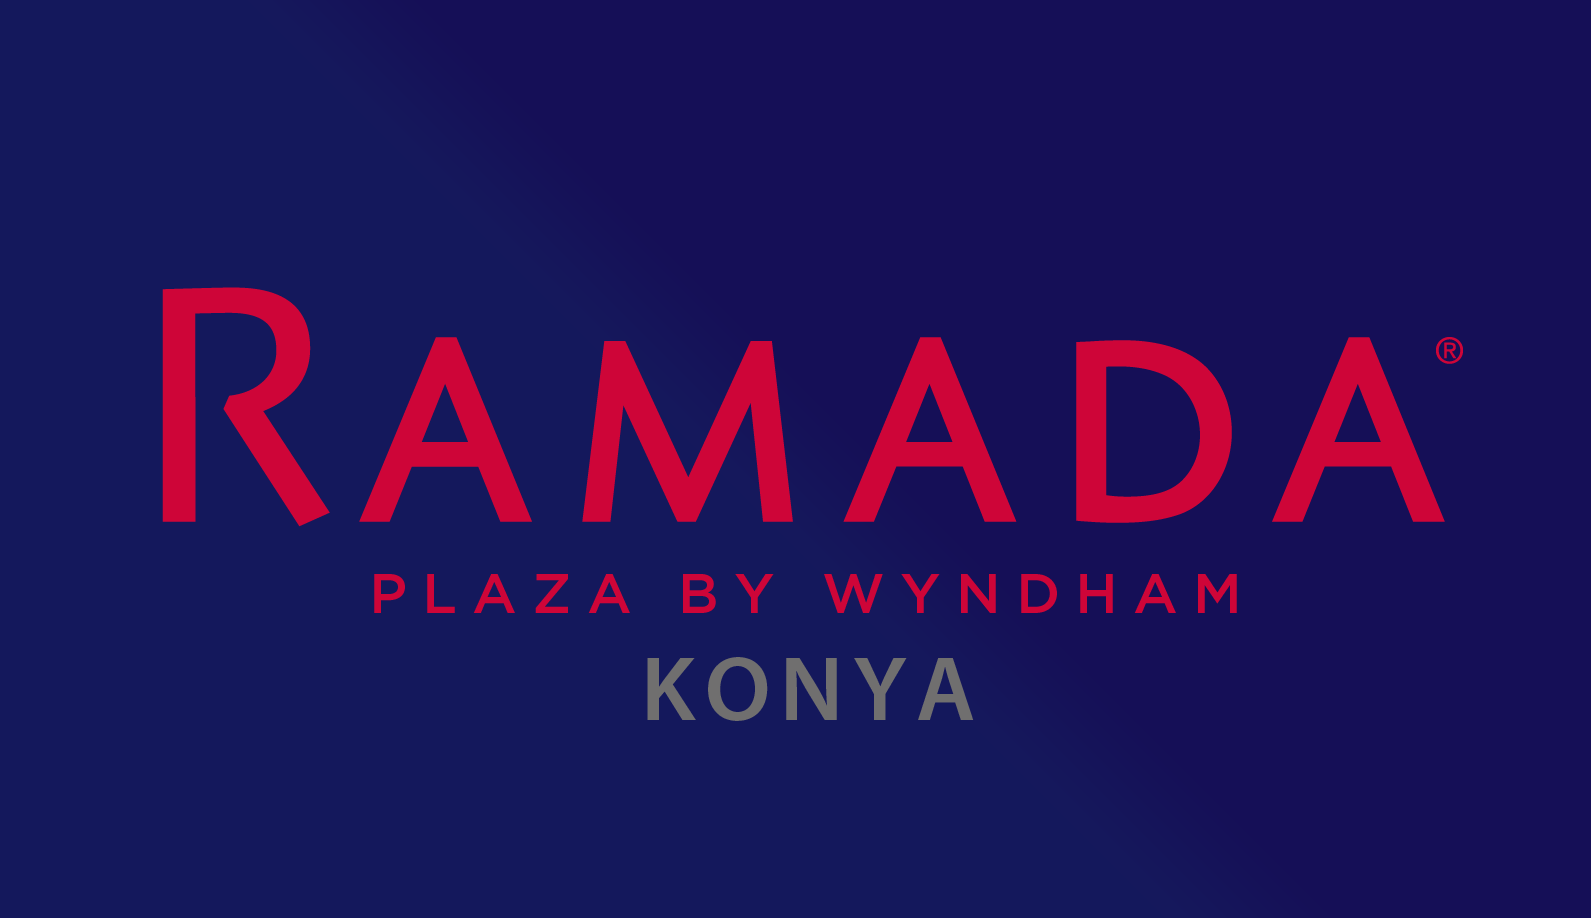 Ramda Plaza By Wyndham Konya